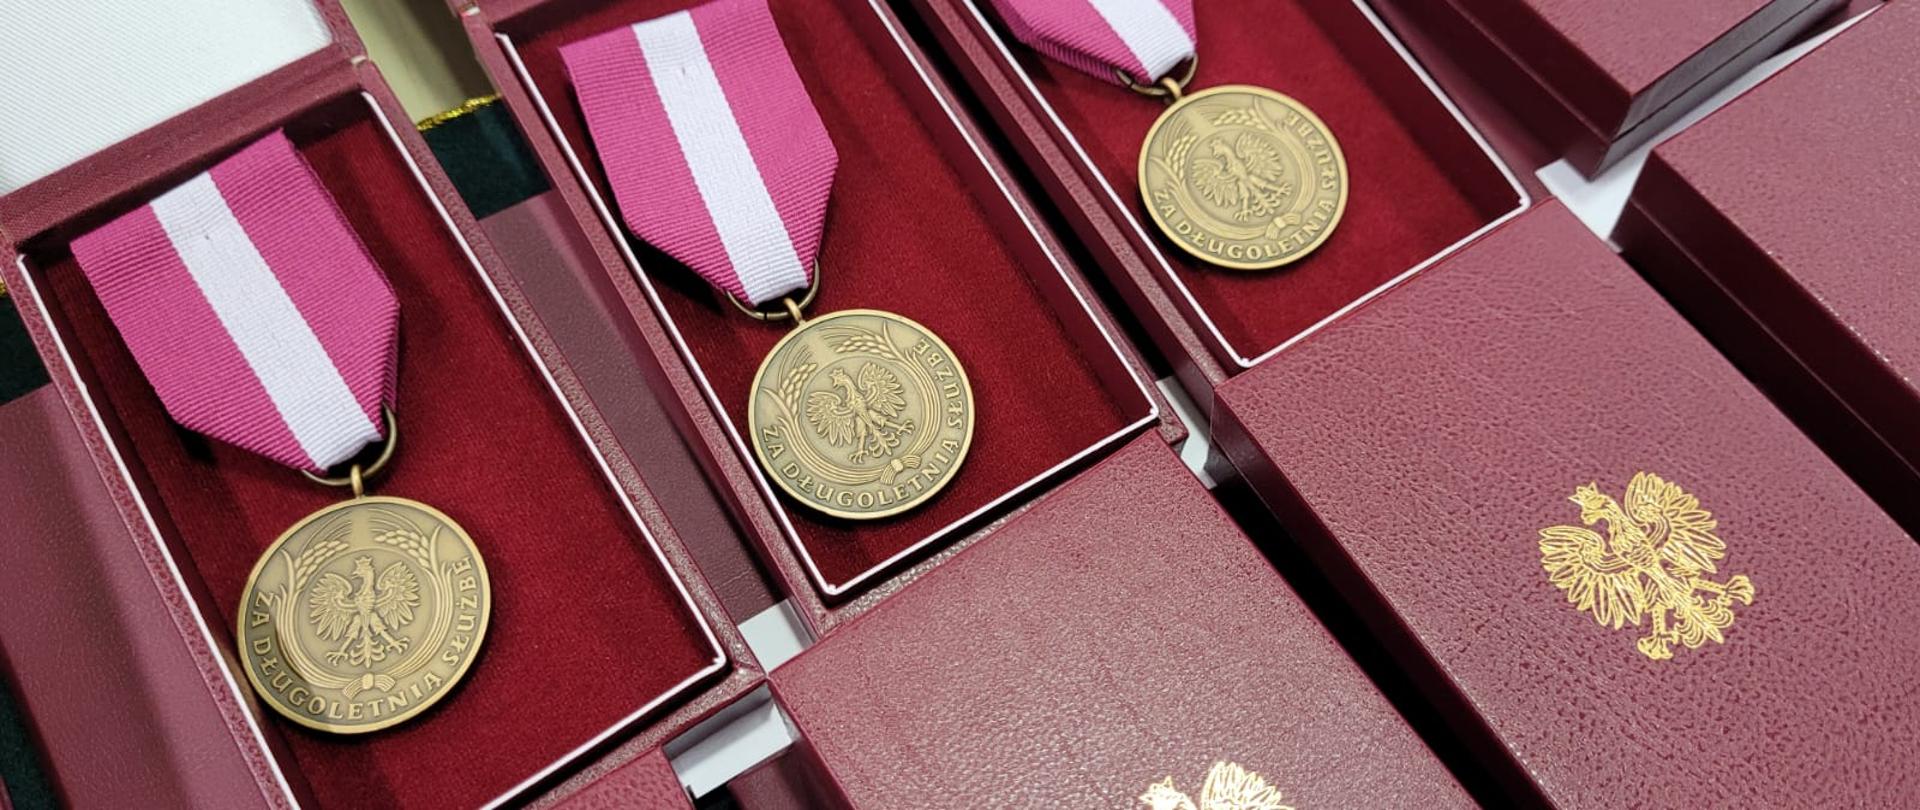 Na stole ułożone odznaczenia państwowe medale brązowy „Medal za długoletnią służbę”.